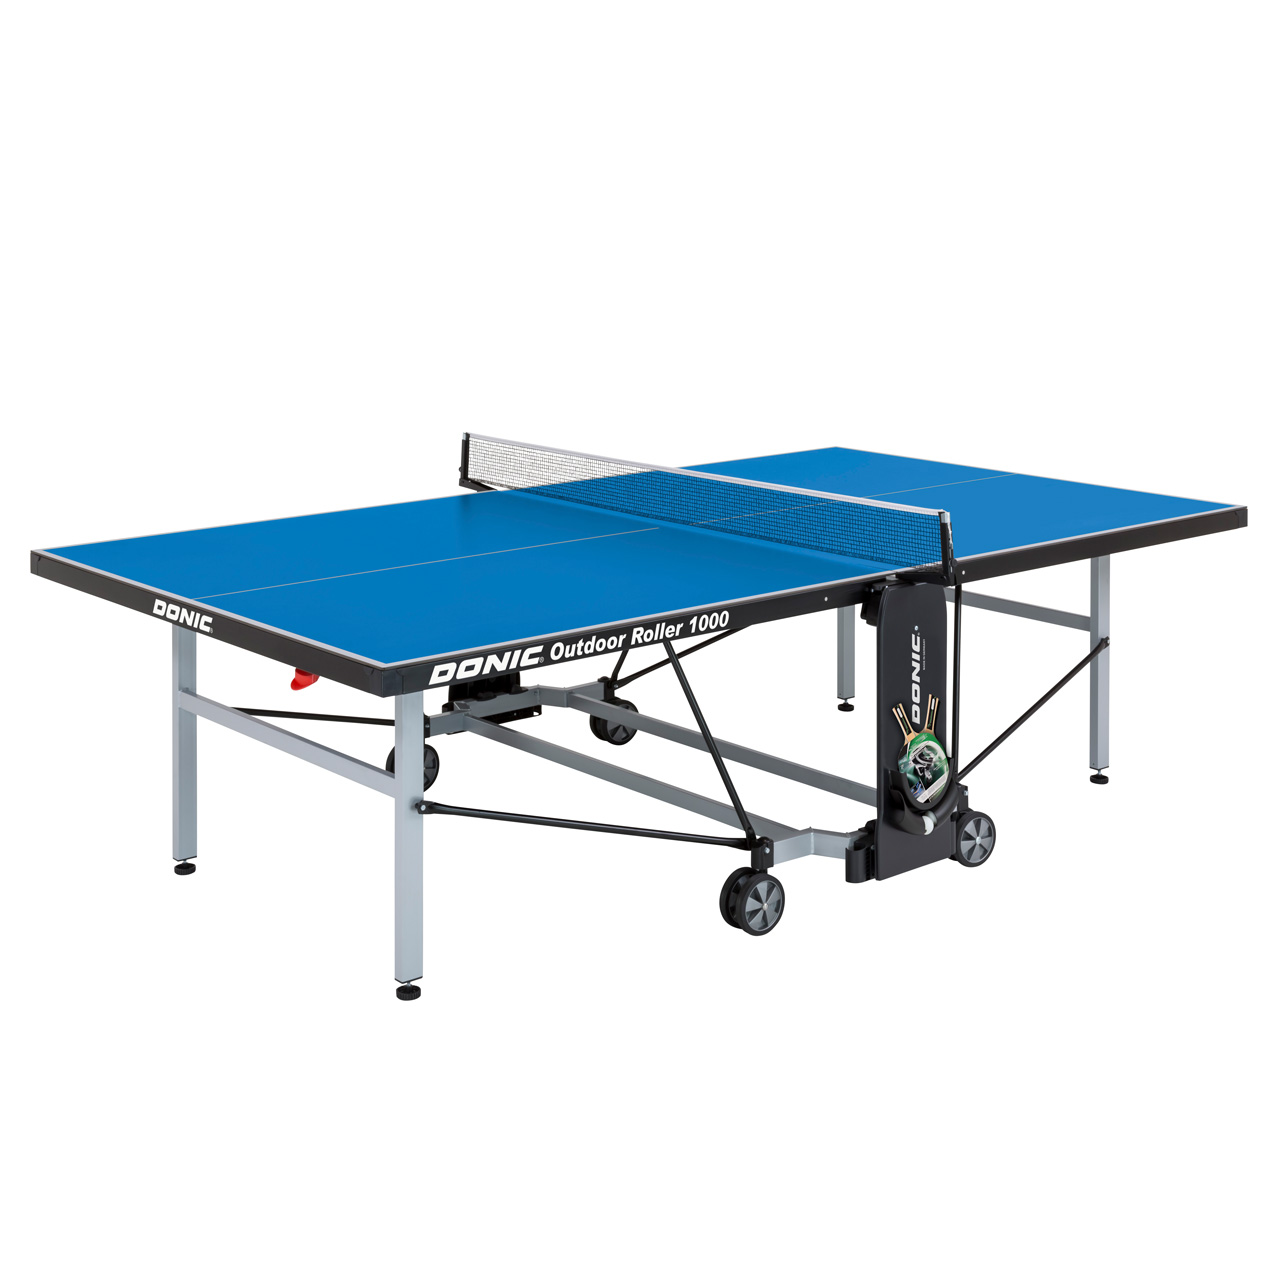 Tischtennis-Freizeit-Platte DONIC Outdoor Roller 1000, Farbe blau